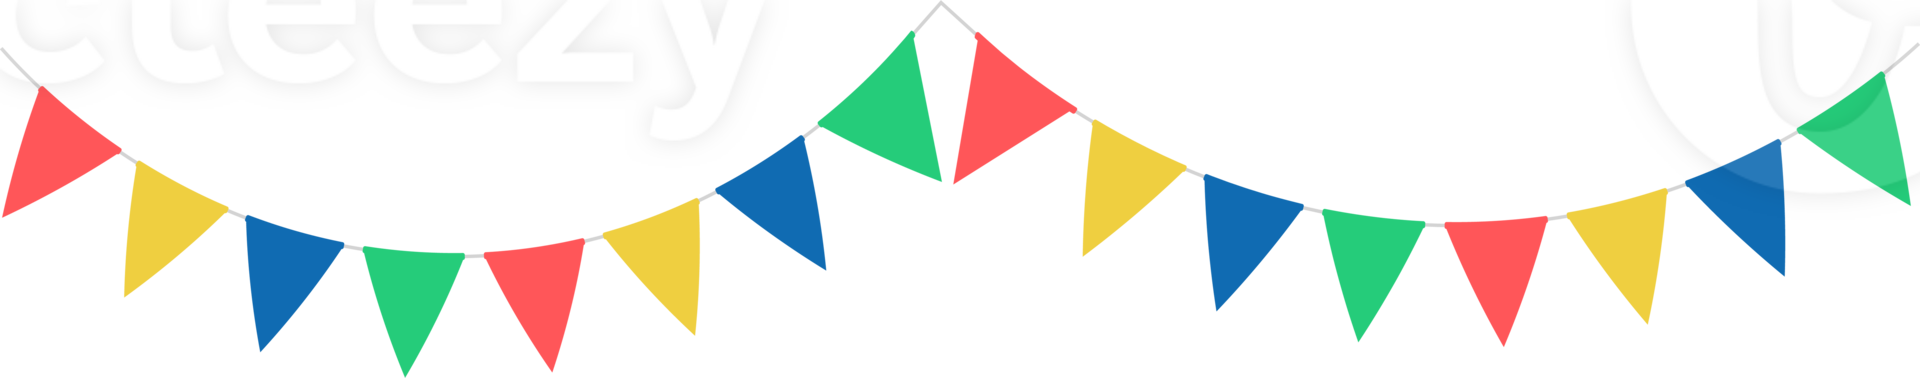 triangolare malloppo, festone bandiere, decorativo colorato festa gagliardetti per compleanno celebrazione, Festival decorazione. png